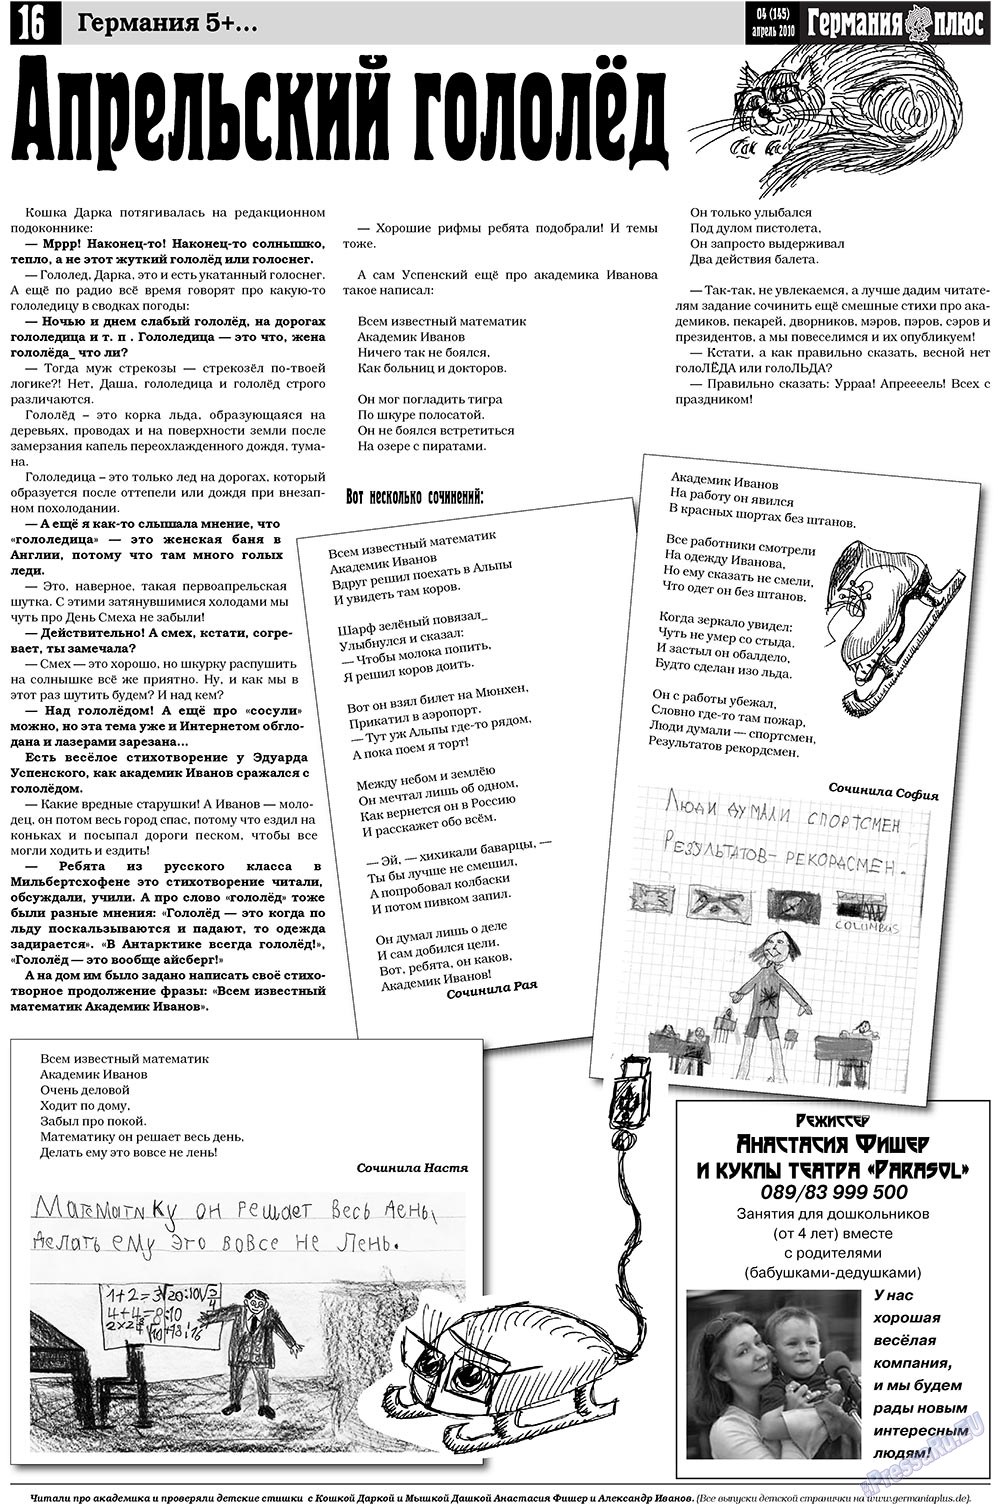 Германия плюс (газета). 2010 год, номер 4, стр. 16